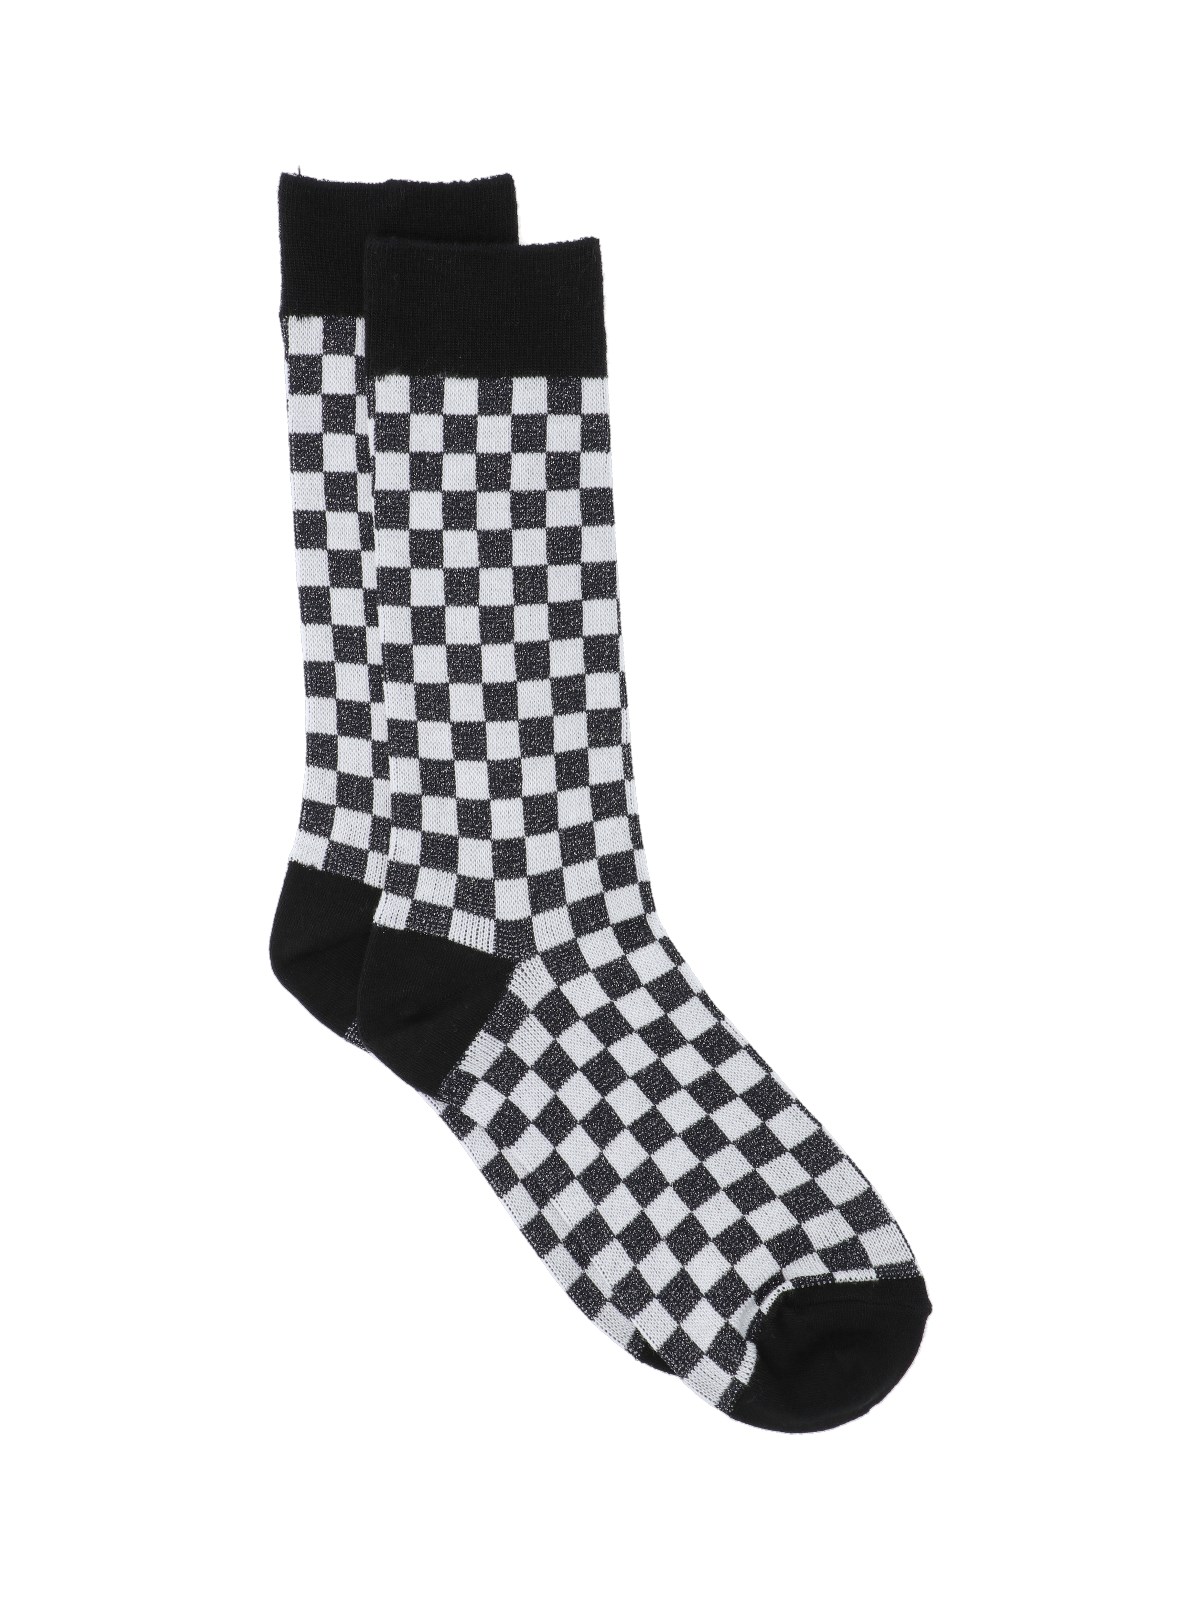 Undercover 'checkerboard' Socks In Black  